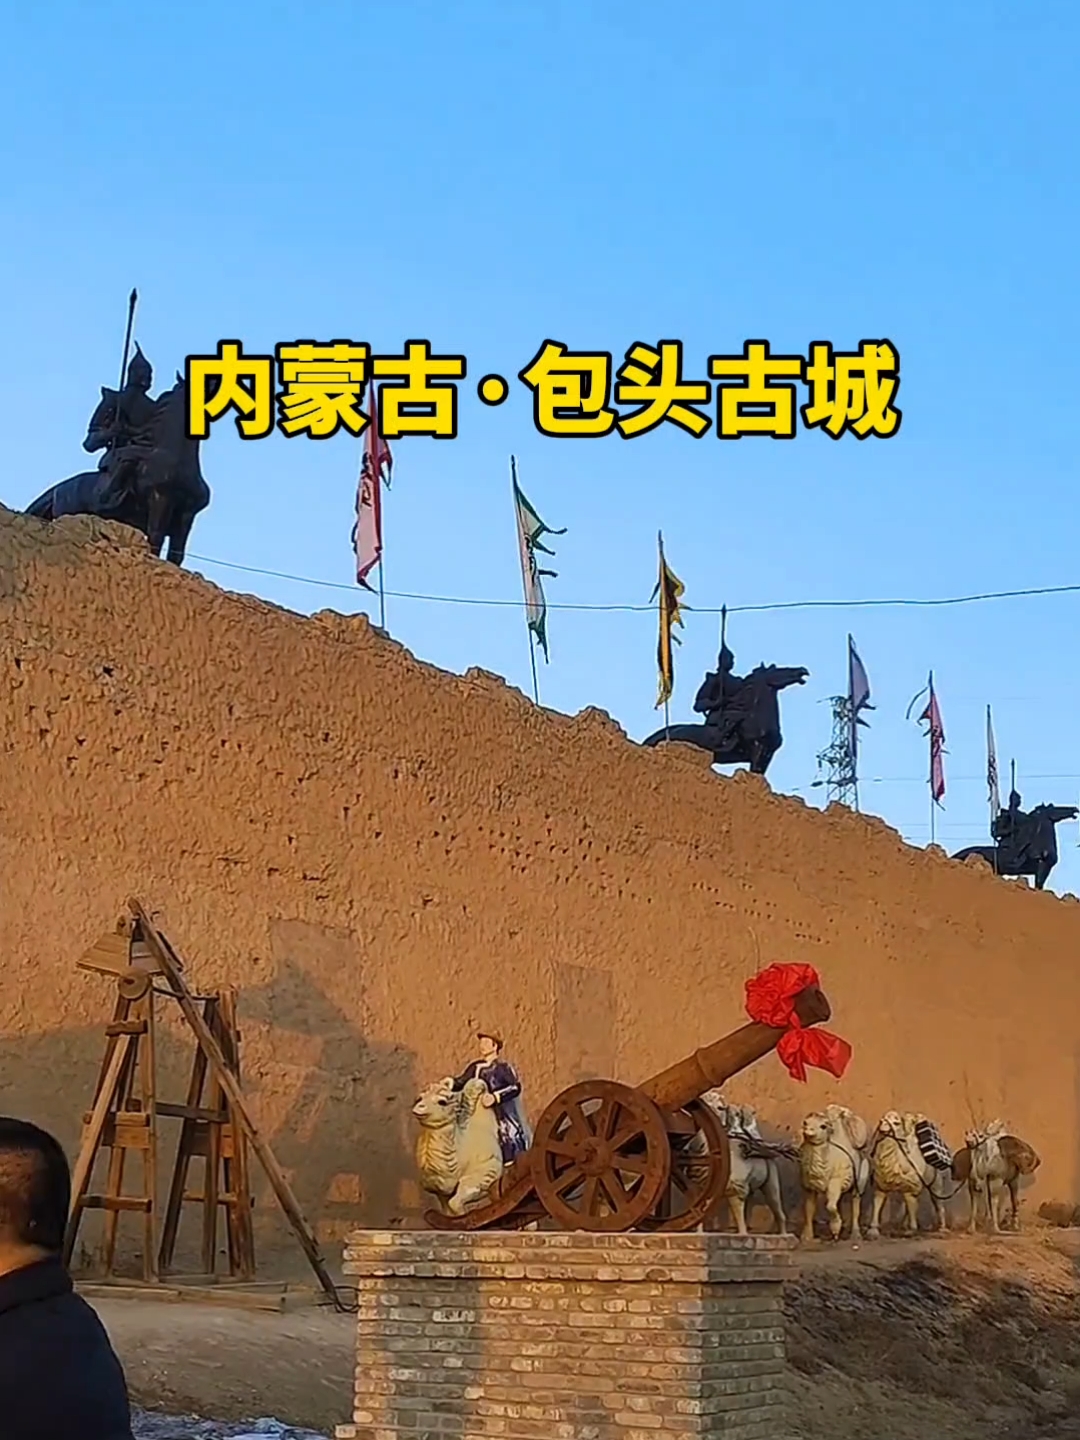 内蒙古包头古城，塞外农耕文化，游乐项目众多